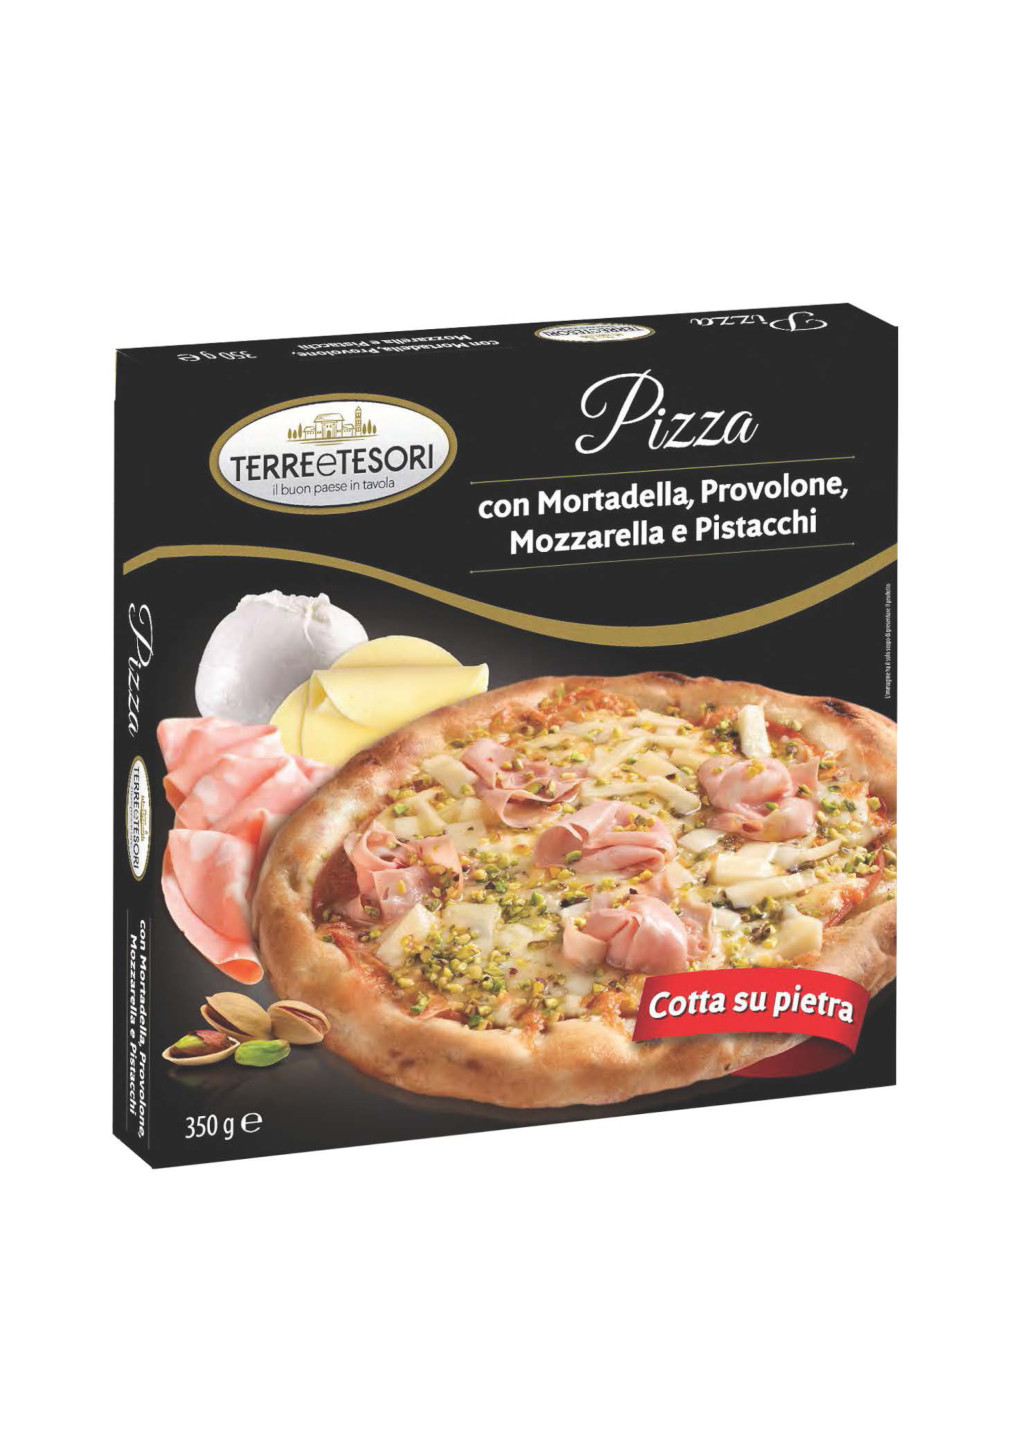 TERRE E TESORI - Pizza surgelata.
Pizza con mortadella, provolone, mozzarella e pistacchi 350 g.